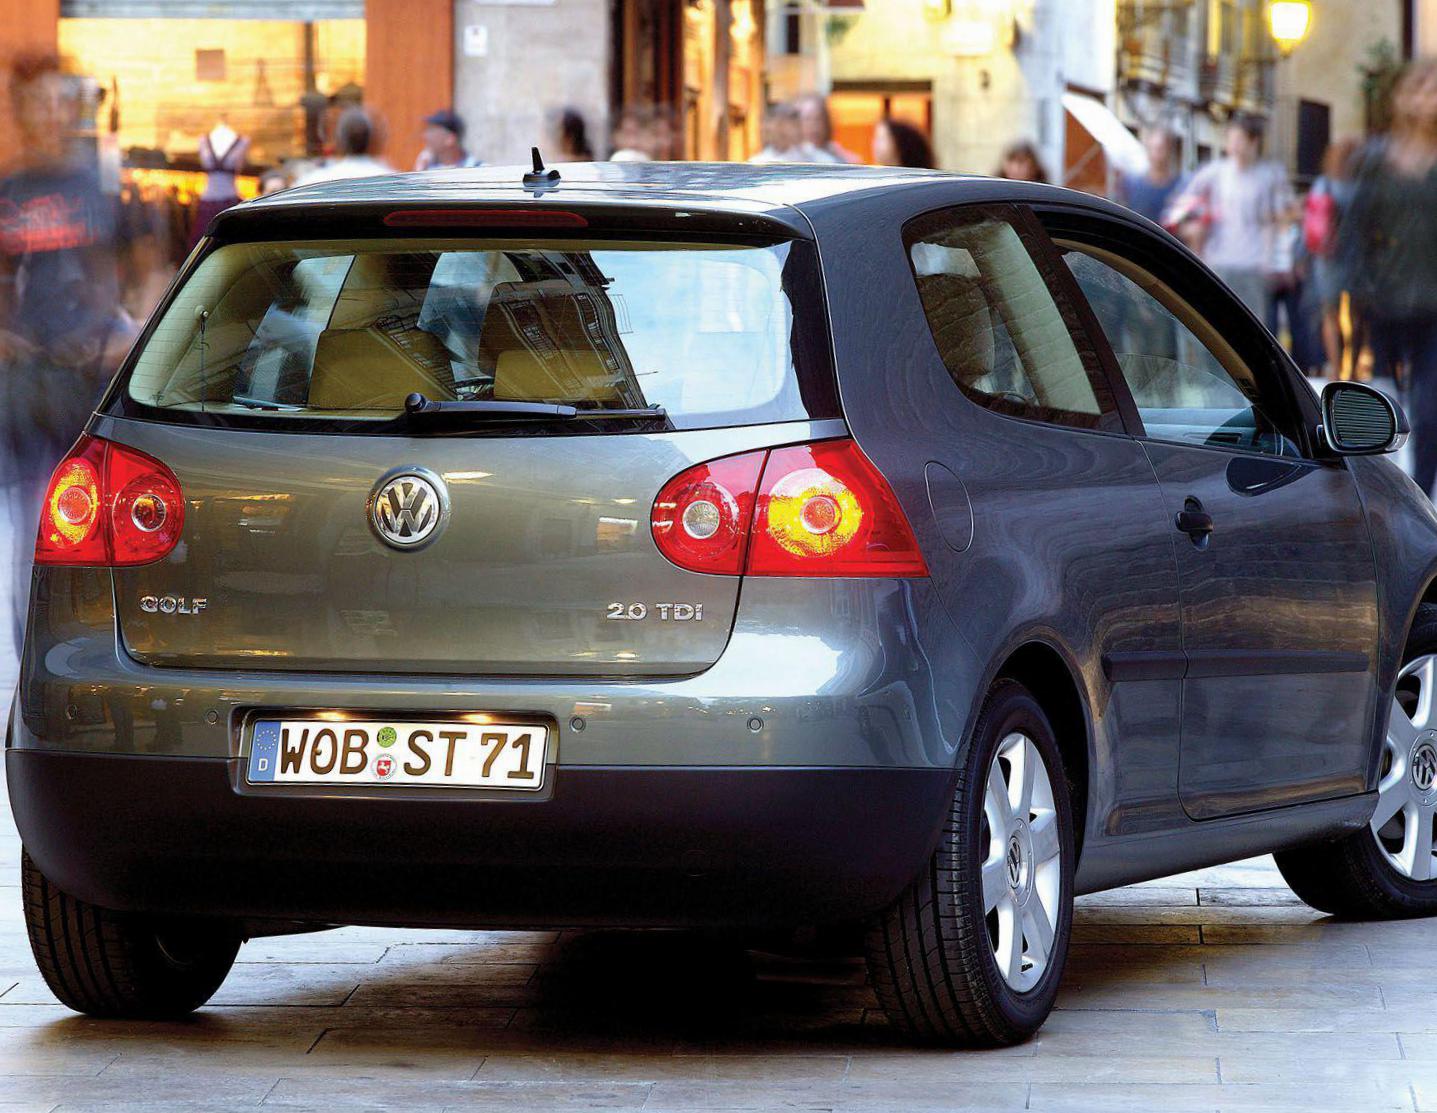 Golf 5 doors Volkswagen used suv